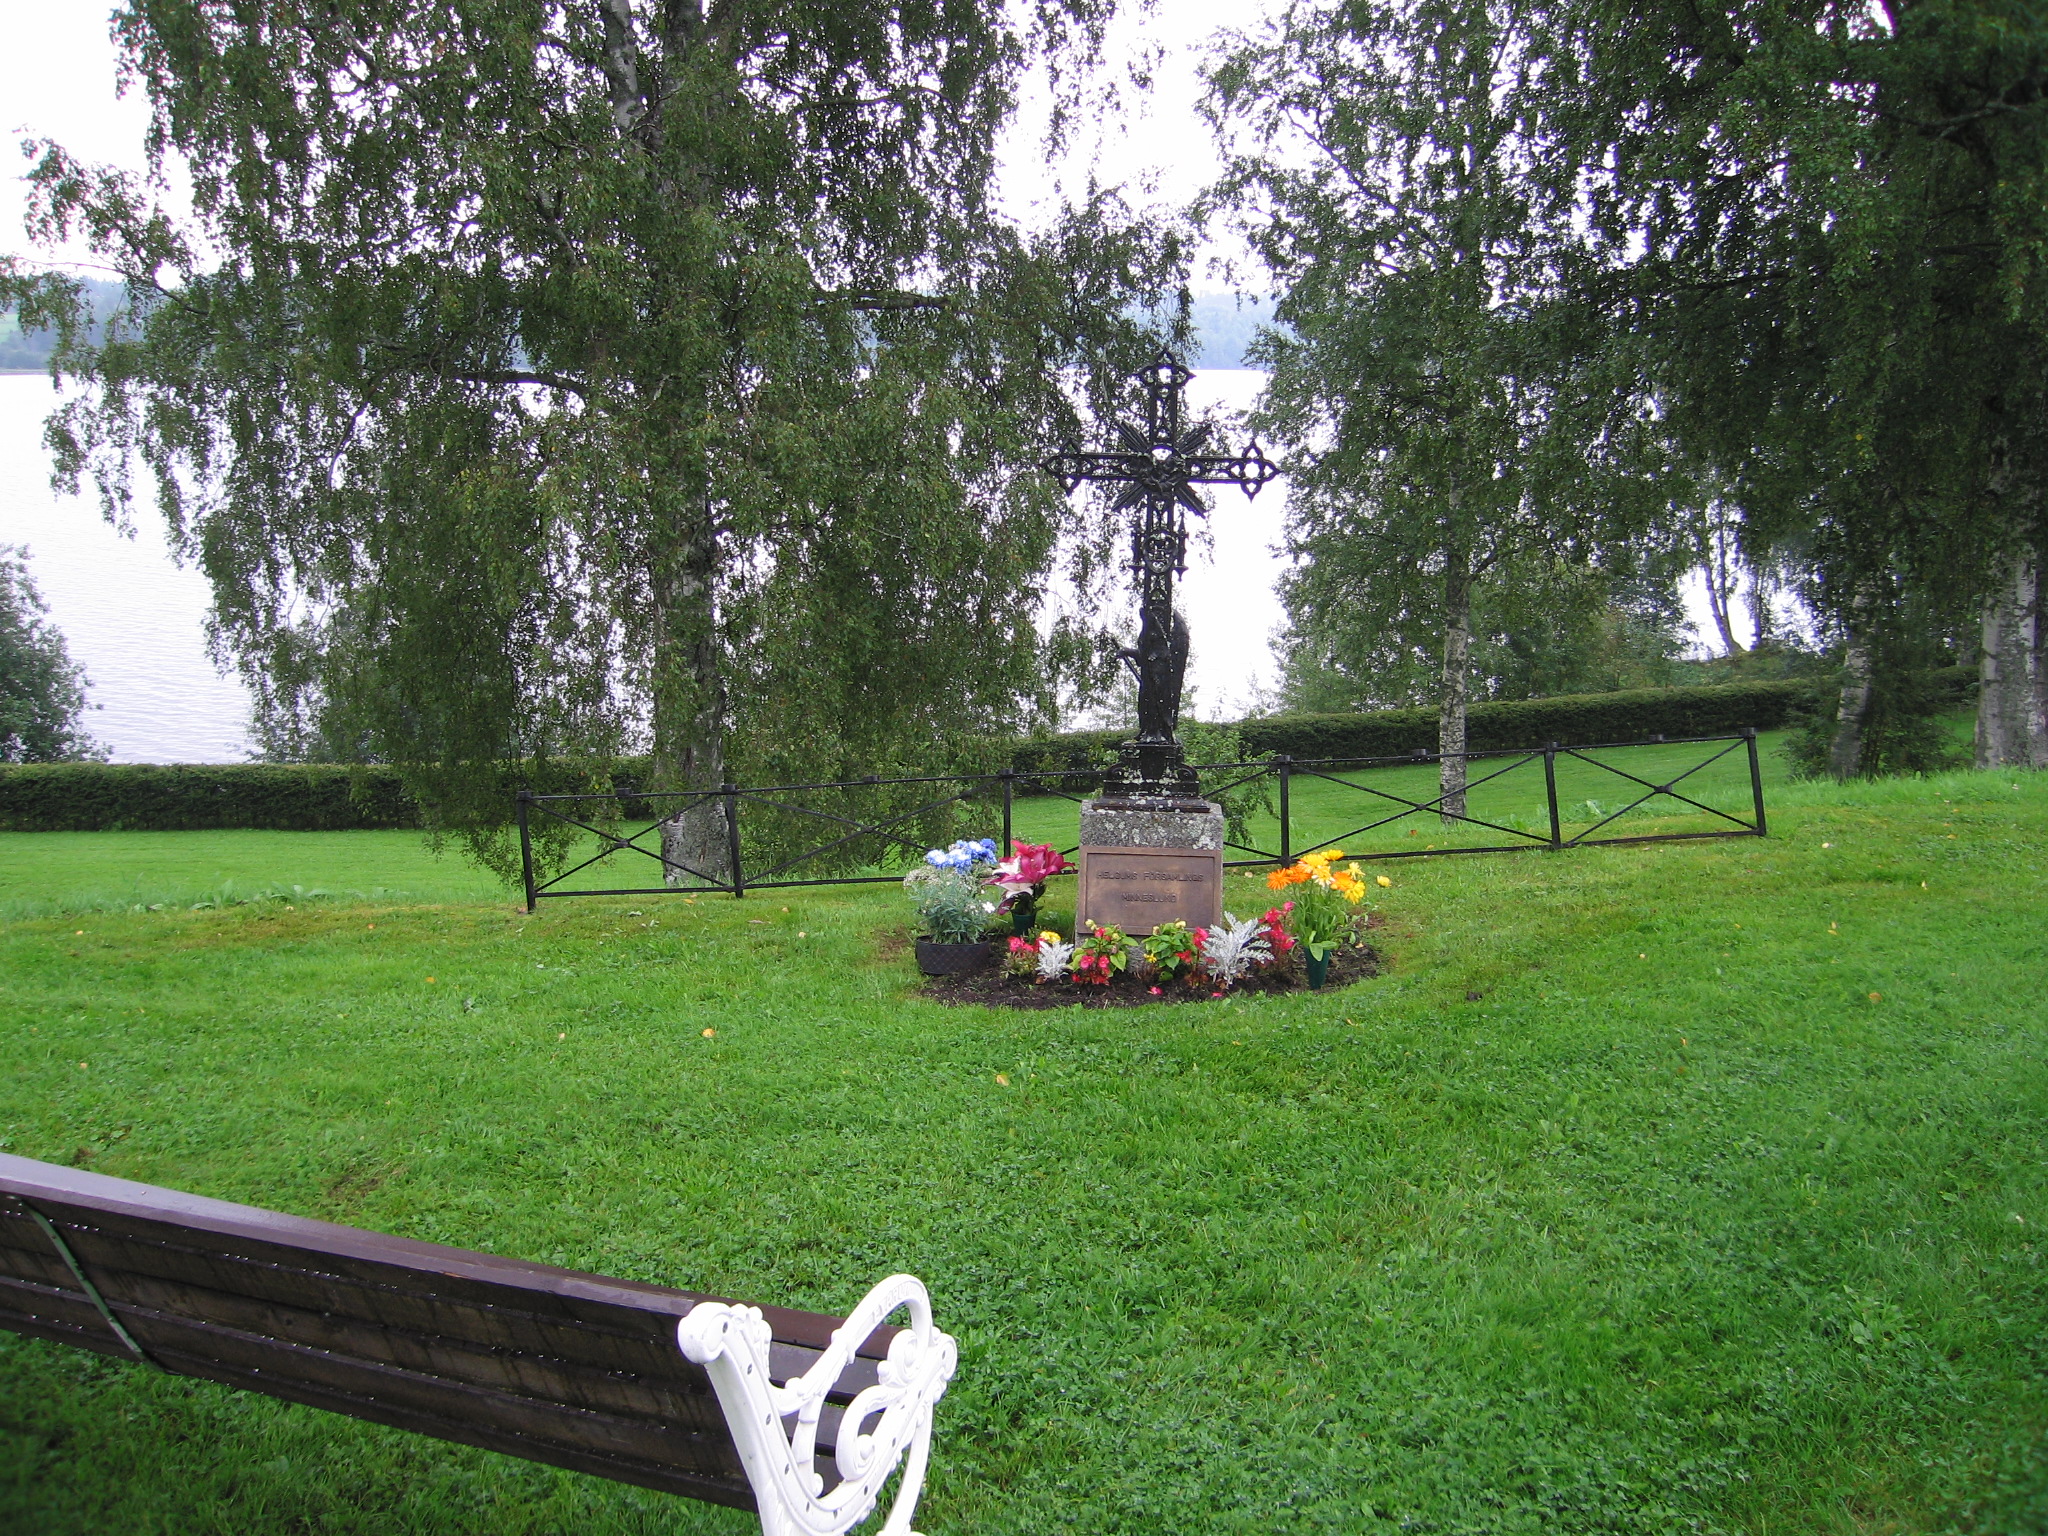 Helgums kyrkas omgivande kyrkogård, minneslunden. 